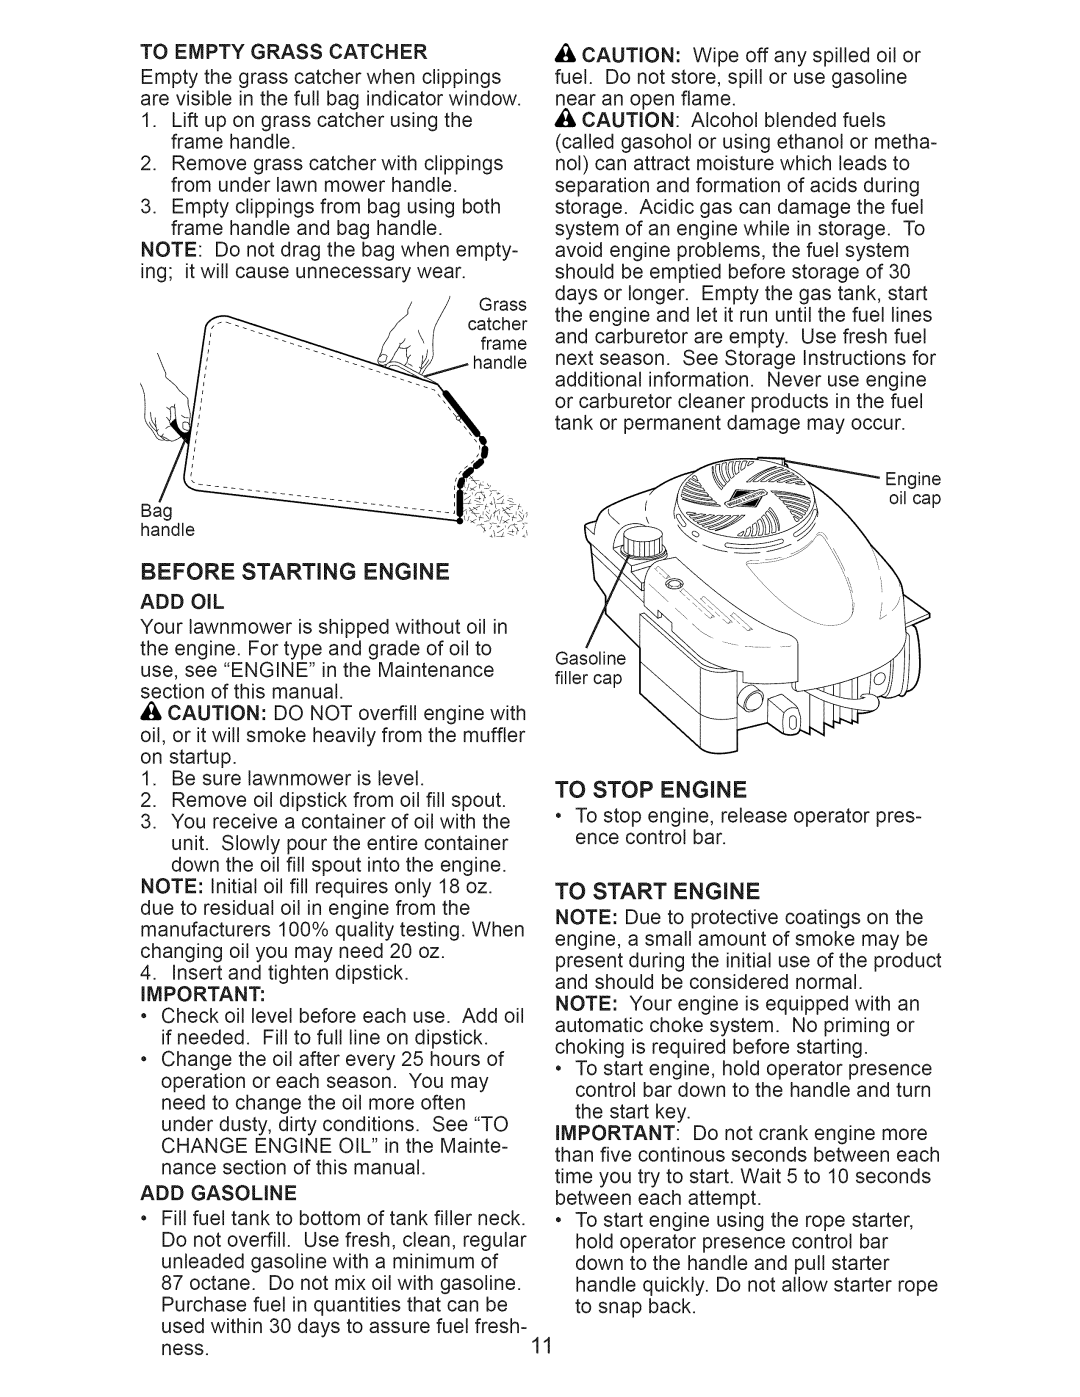 Craftsman 917.374101 manual Before Starting Engine 